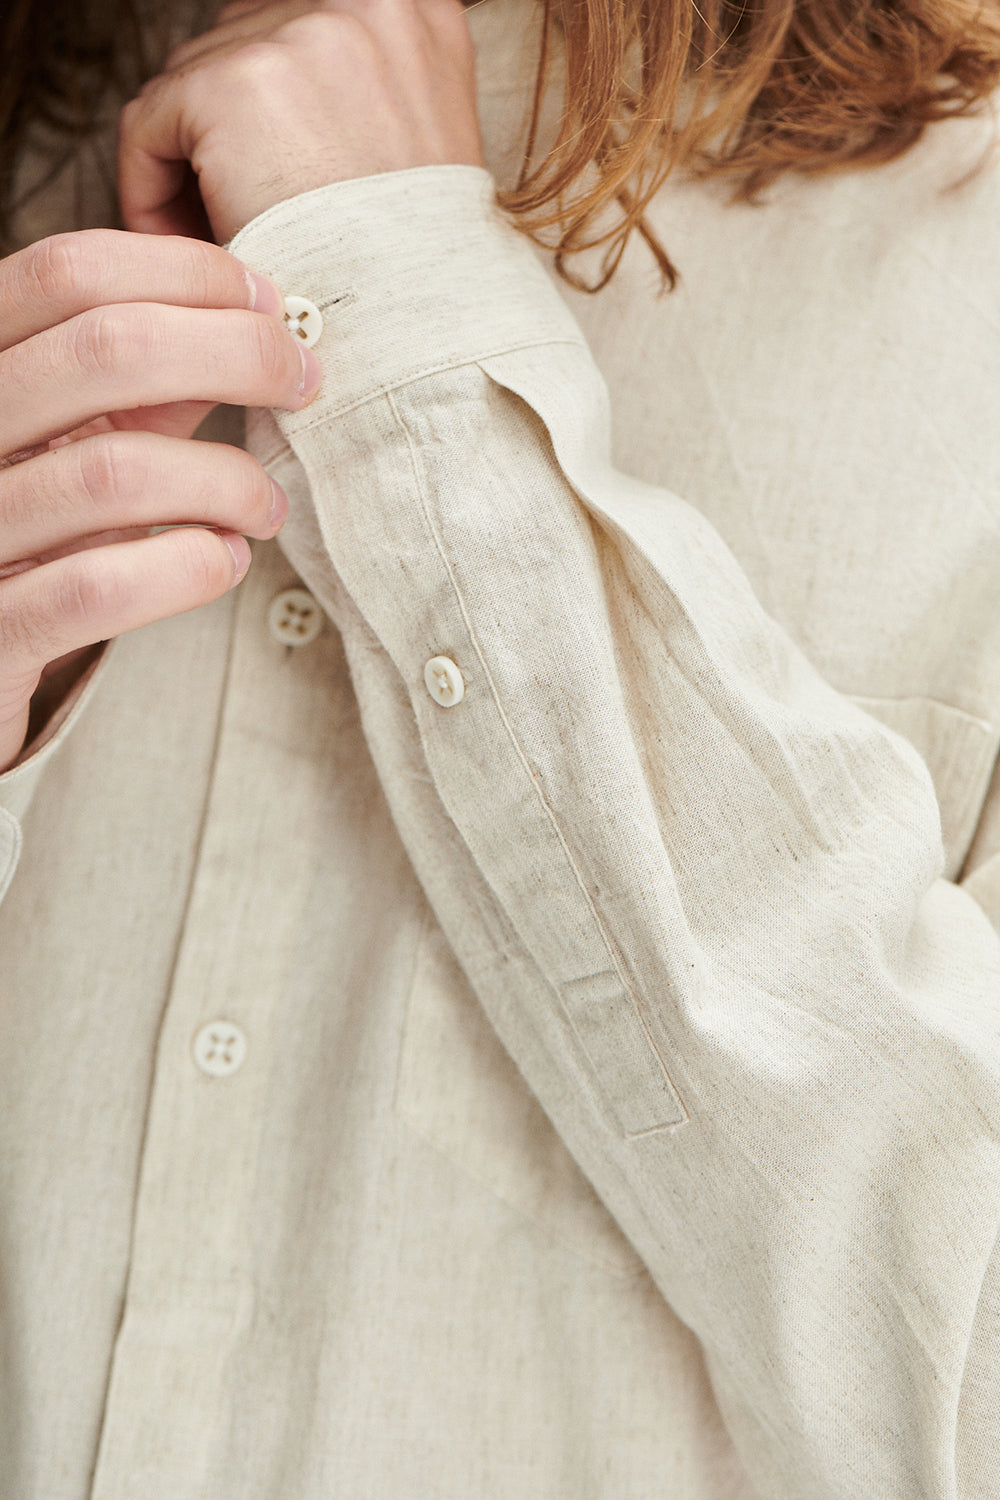 Zen Shirt in a Beige Japanese Organic Cotton and Linen